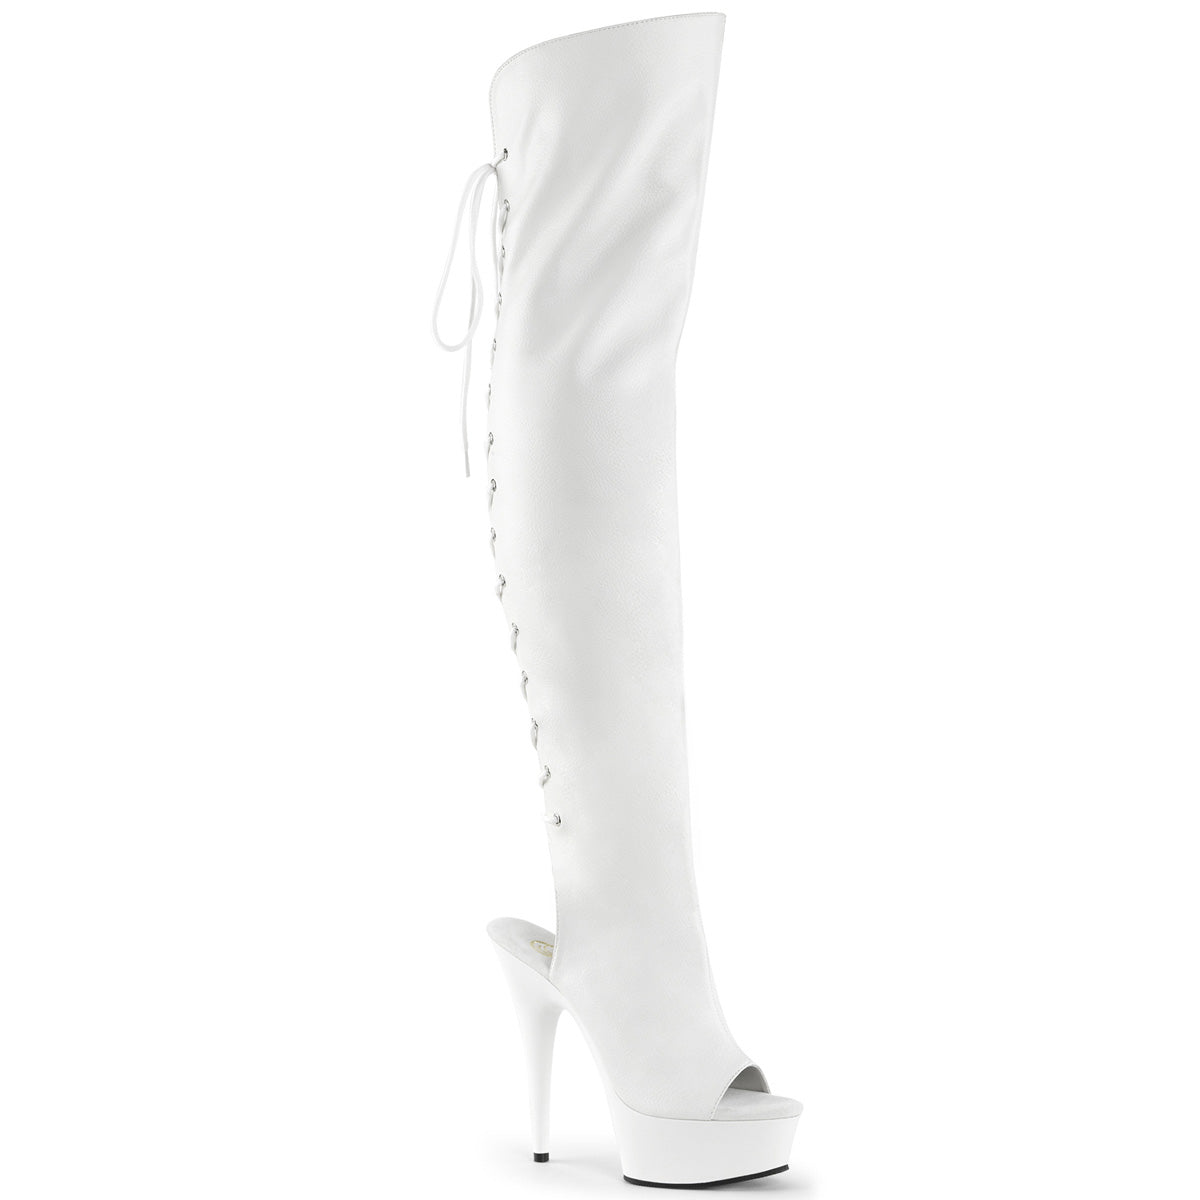 Delight-3019 Pleaser 6-дюймовый каблук белый полюс танцорные платформы